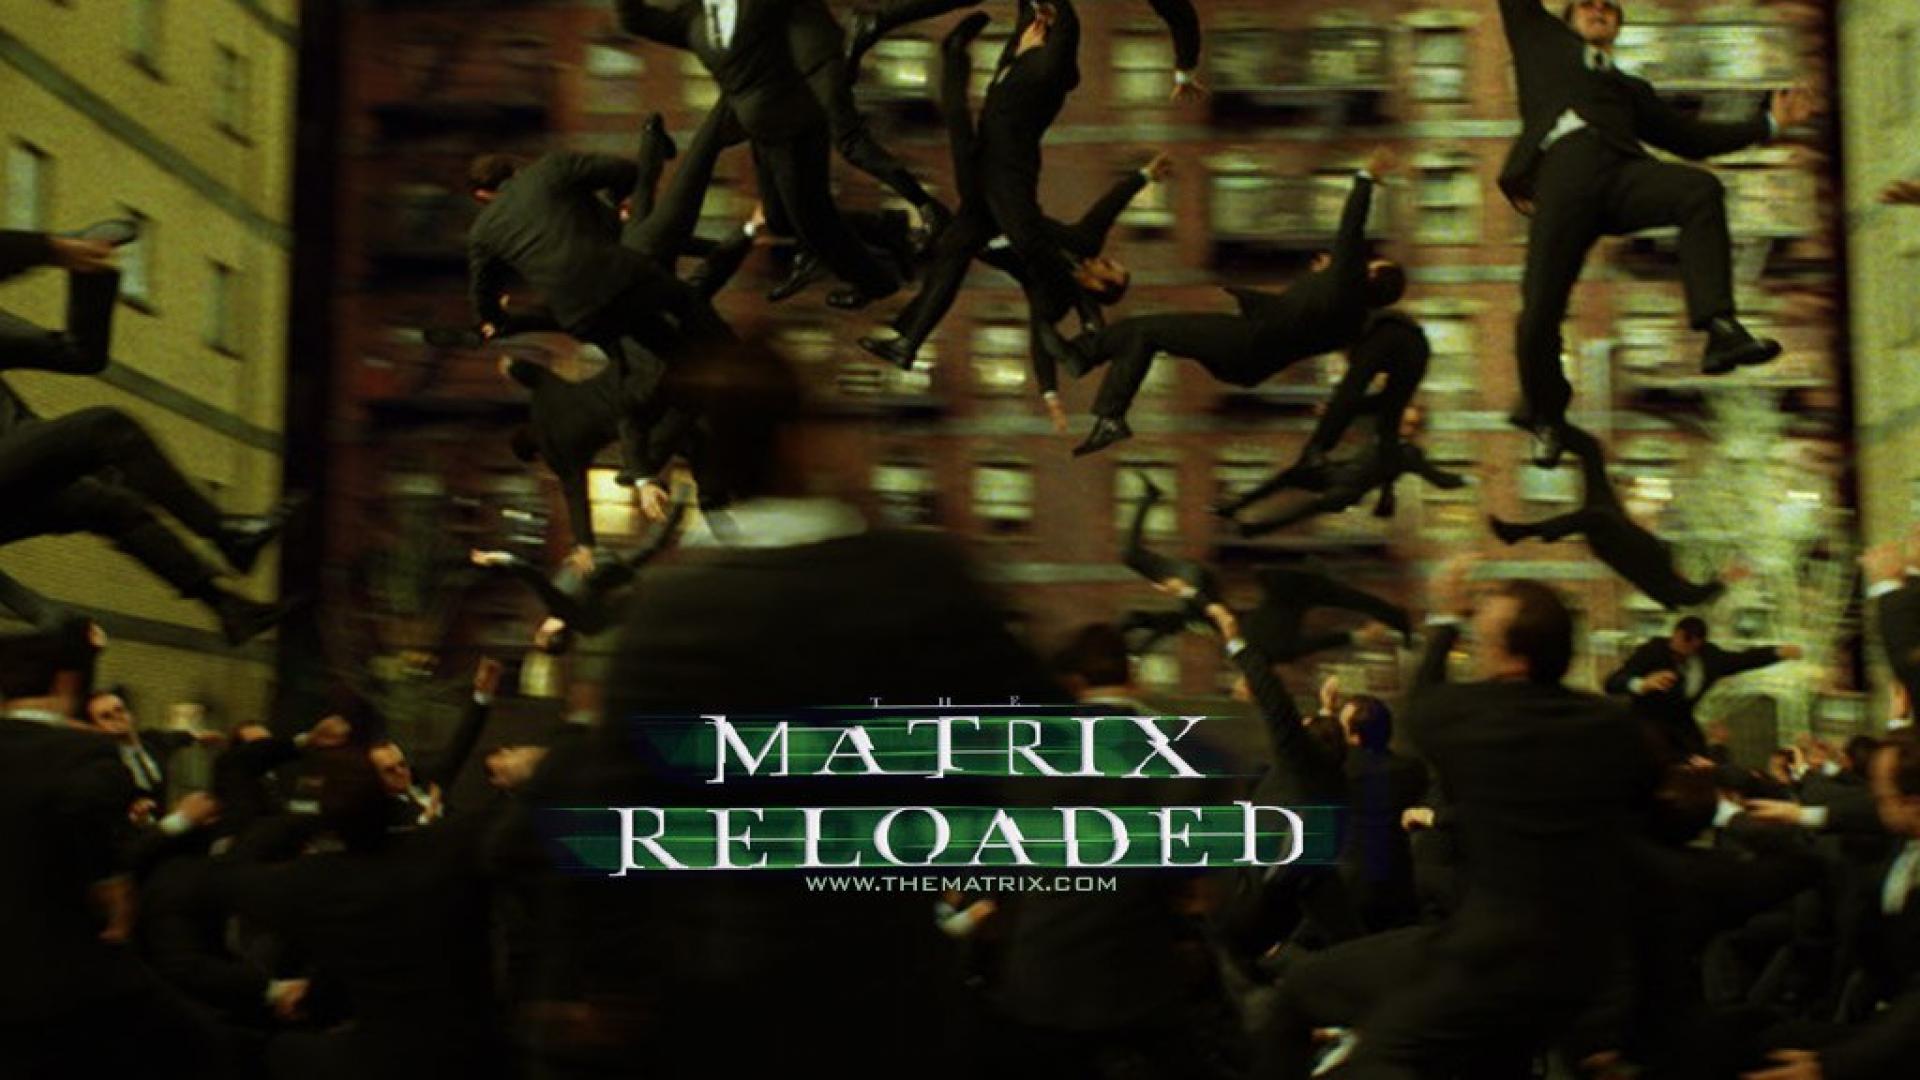 the matrix reloaded hd wallpaper - (#27736) - HQ Desktop ...